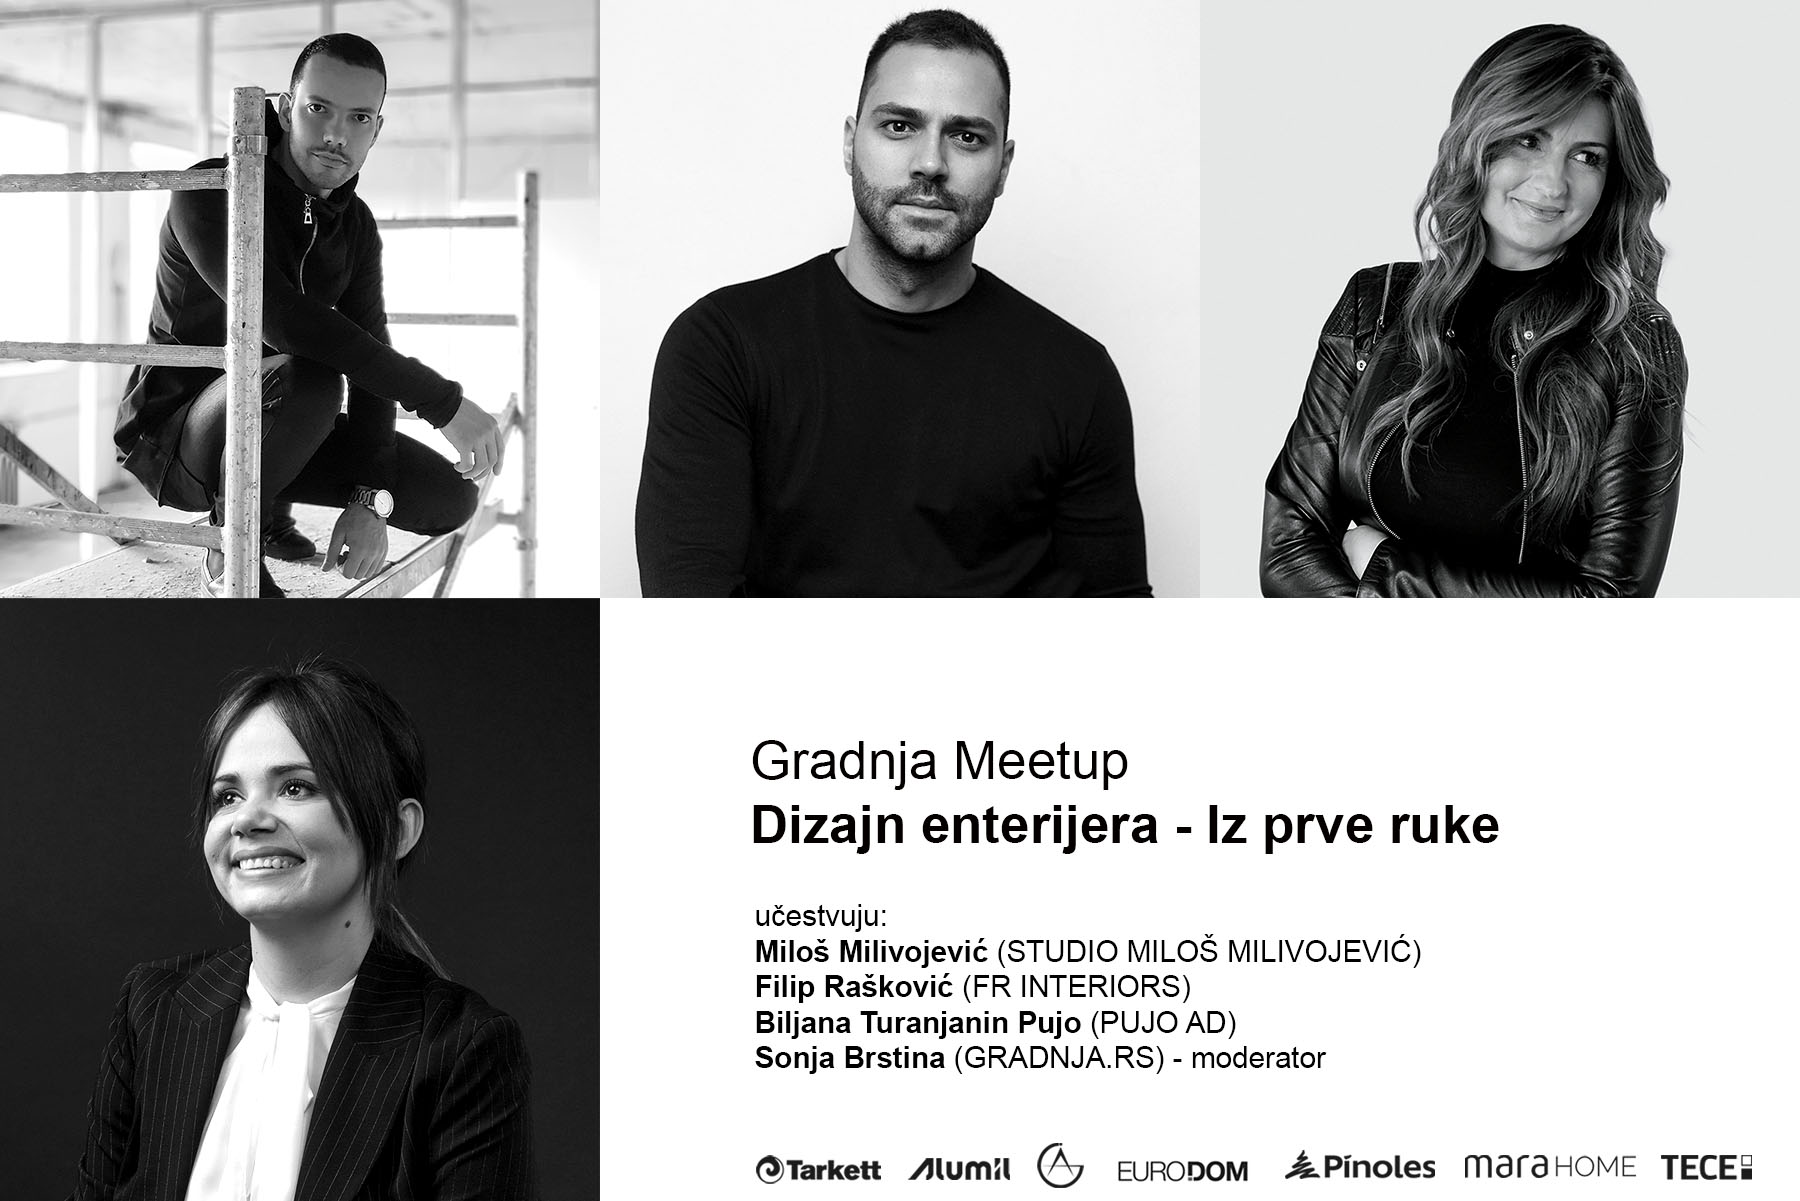 Gradnja MeetUp će okupiti vodeće dizajnere enterijera iz Srbije na jednom mestu